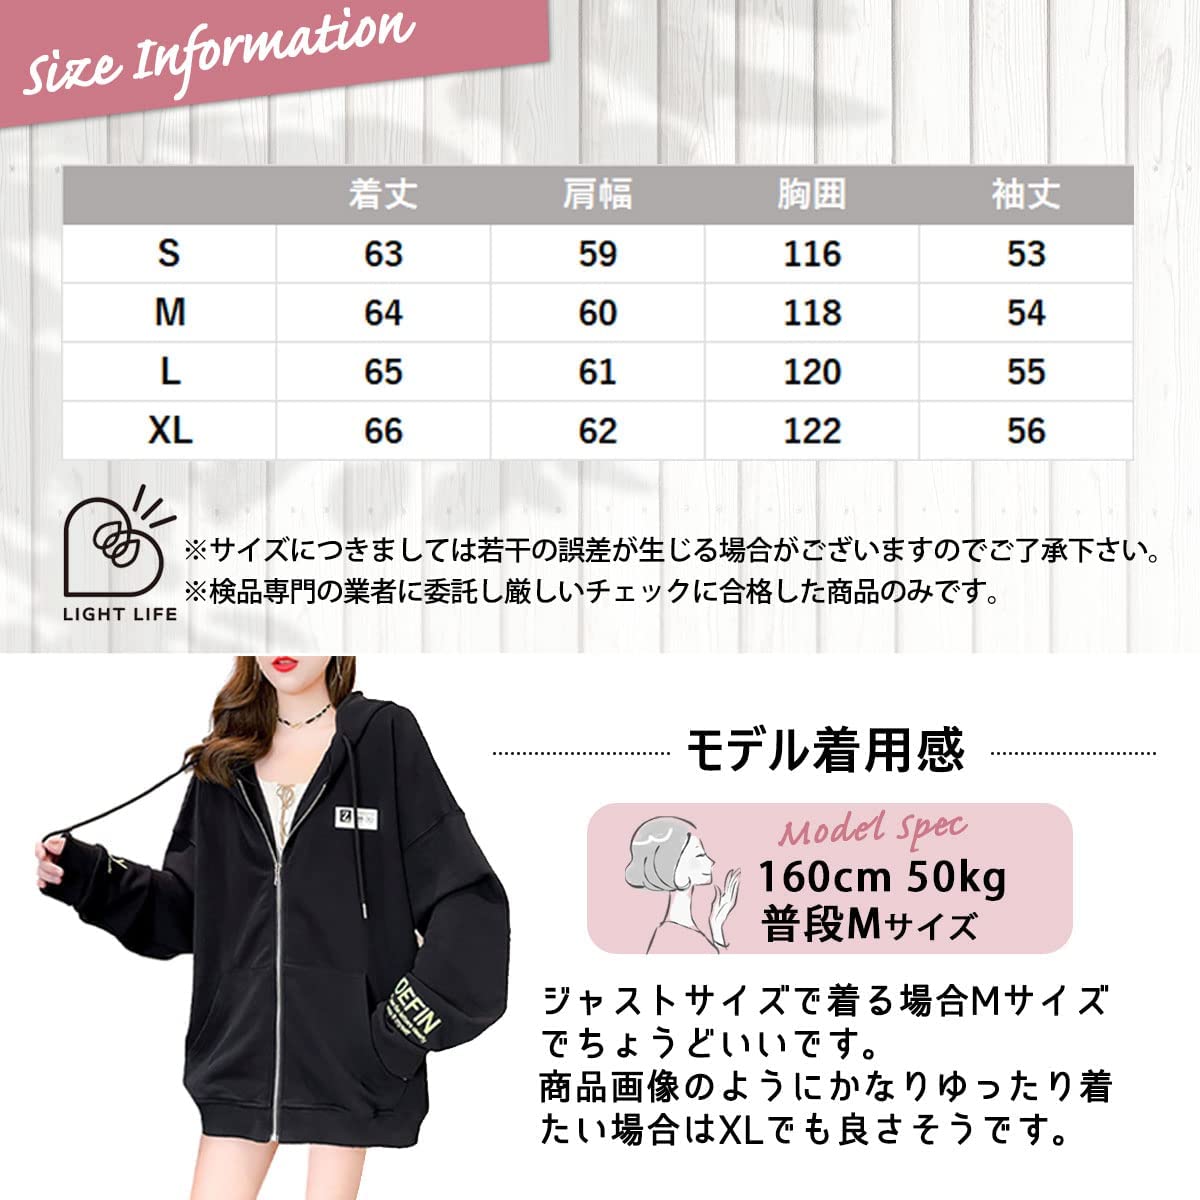 3カラー デザイン パーカー 大きめ 薄手 レディース 長袖 ゆったり 春夏 カジュアル 可愛い 韓国 S〜XL